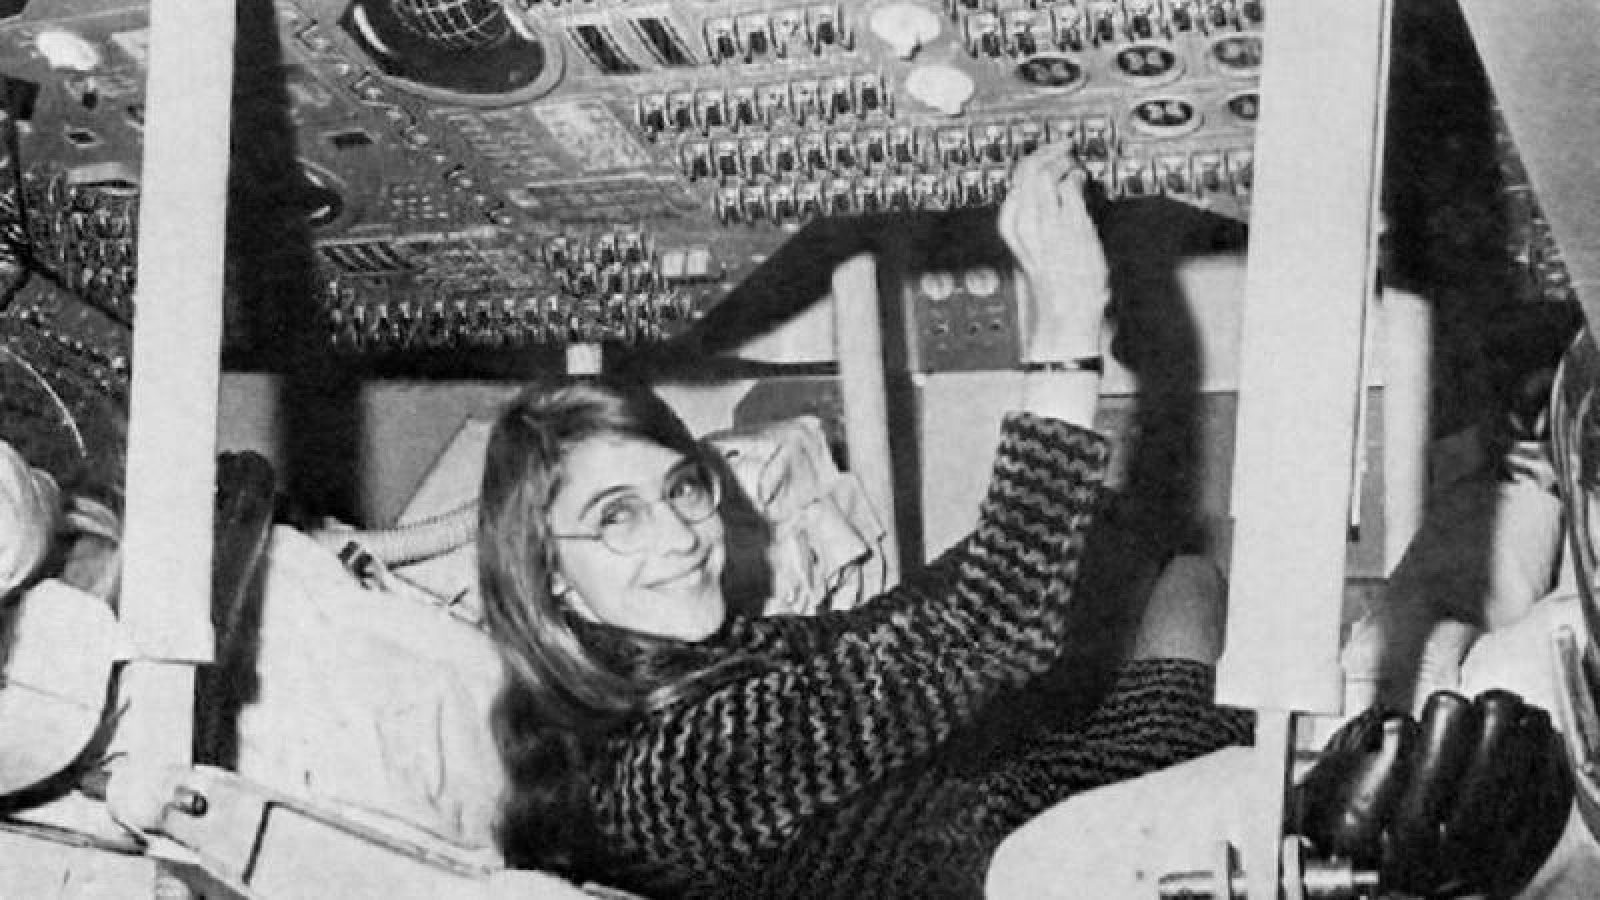 Margaret Hamilton diseñó el programa informático que se utilizó en la misión Apolo 11.